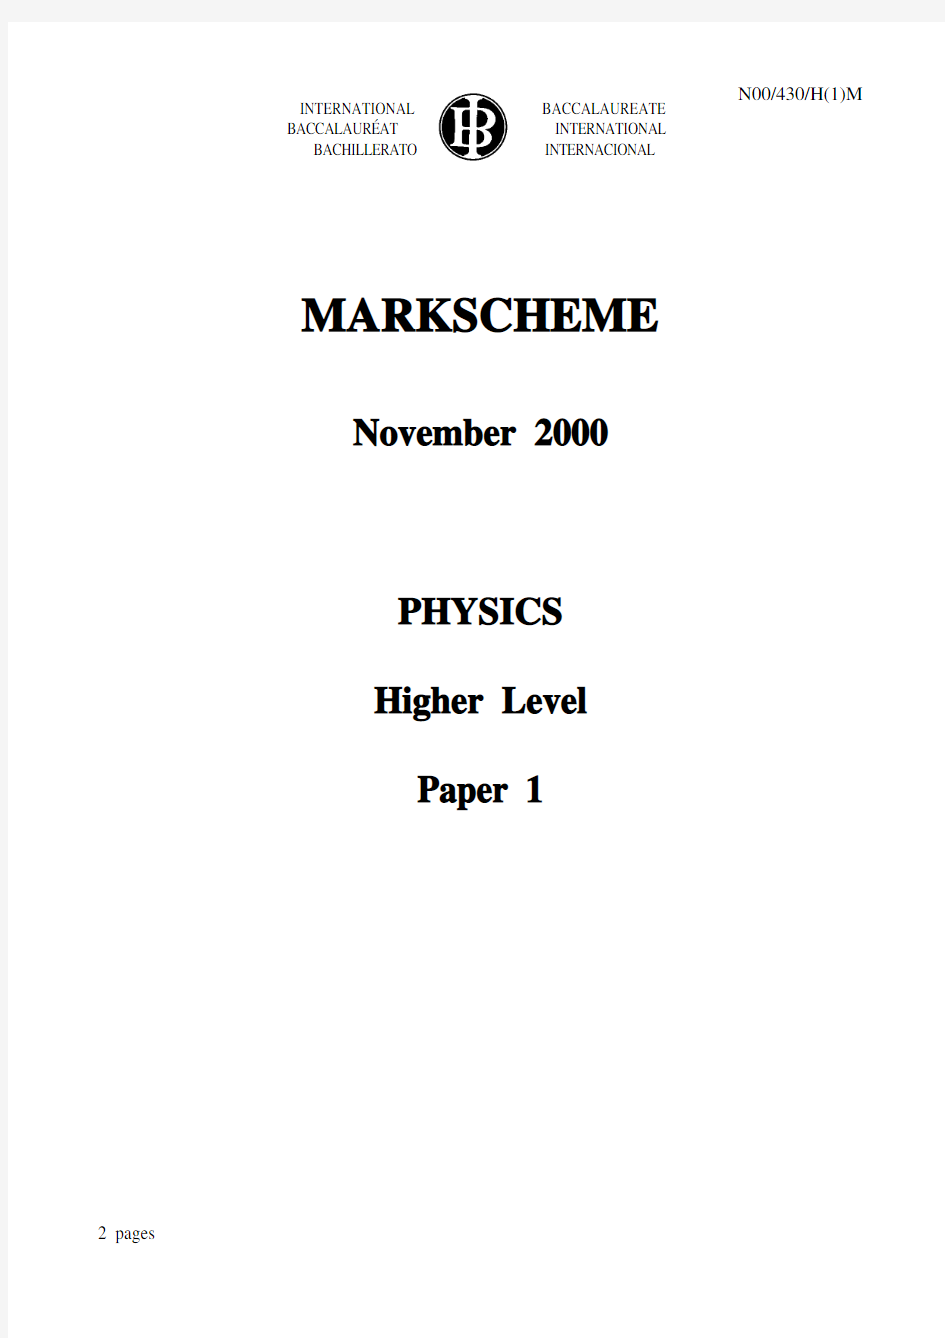 Physics Paper 1 HL Nov 2000 Markscheme